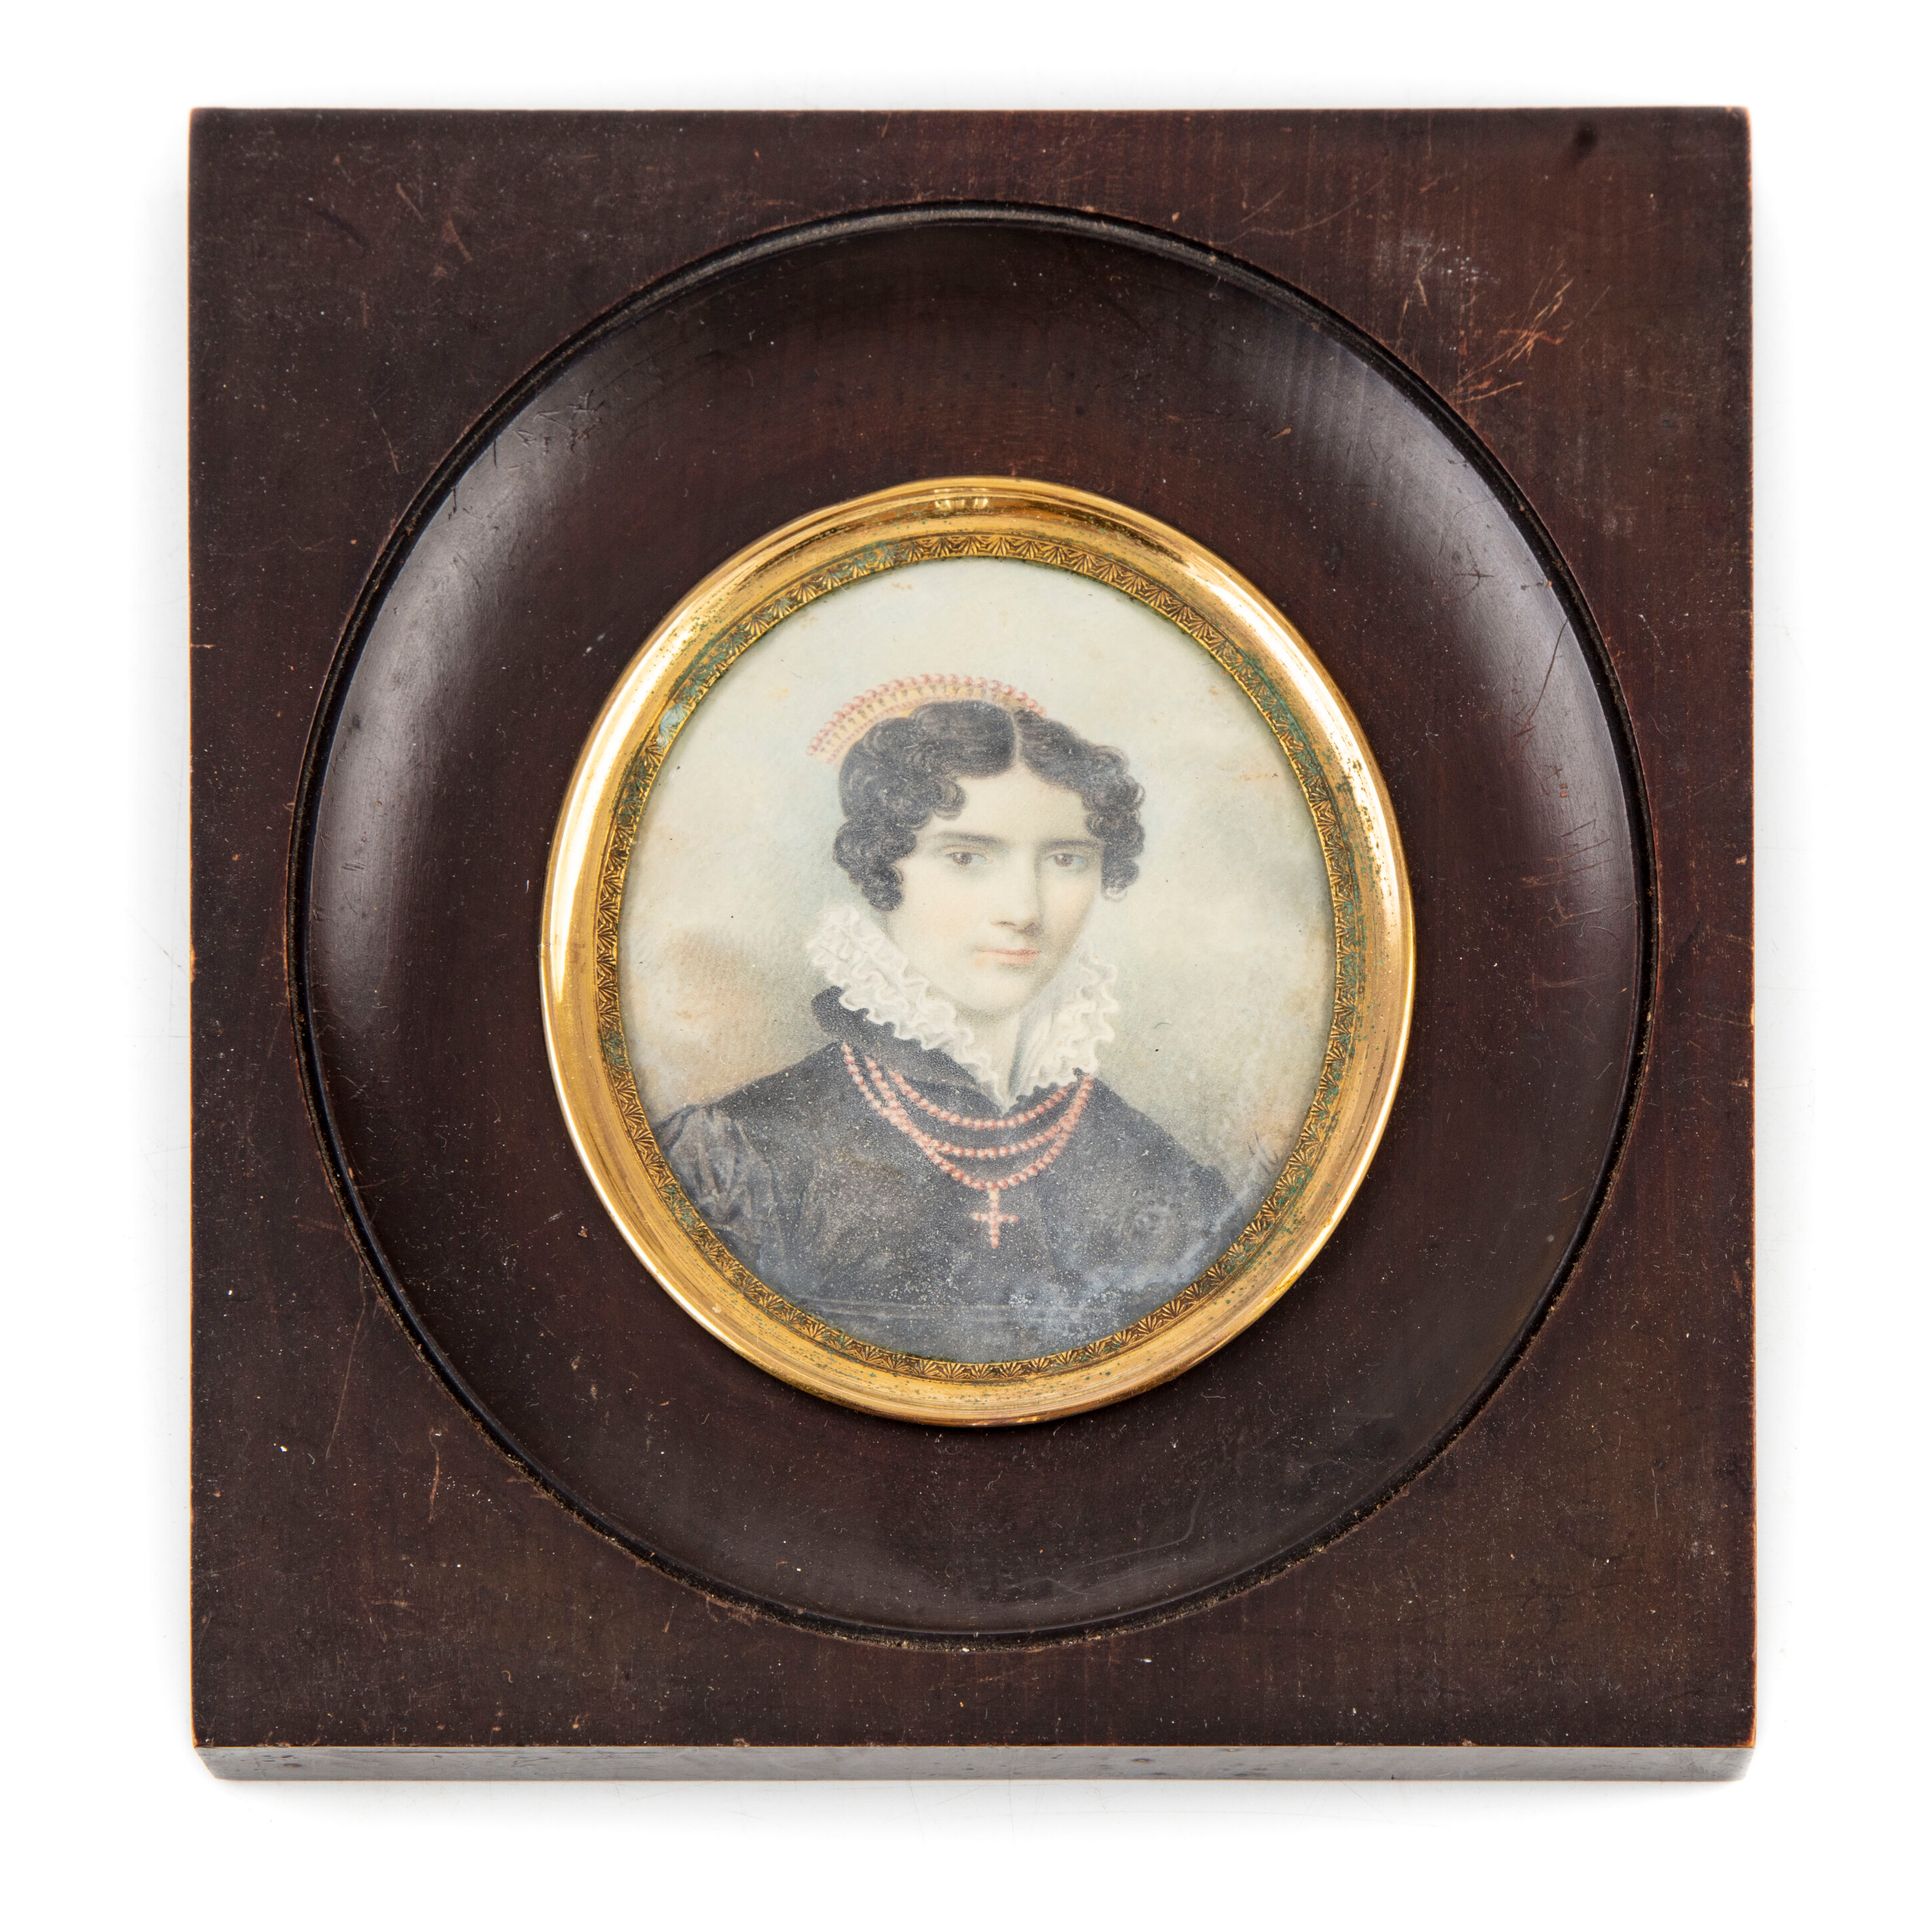 ECOLE FRANCAISE XIXè SCUOLA FRANCESE circa 1820

Ritratto di donna con collana e&hellip;